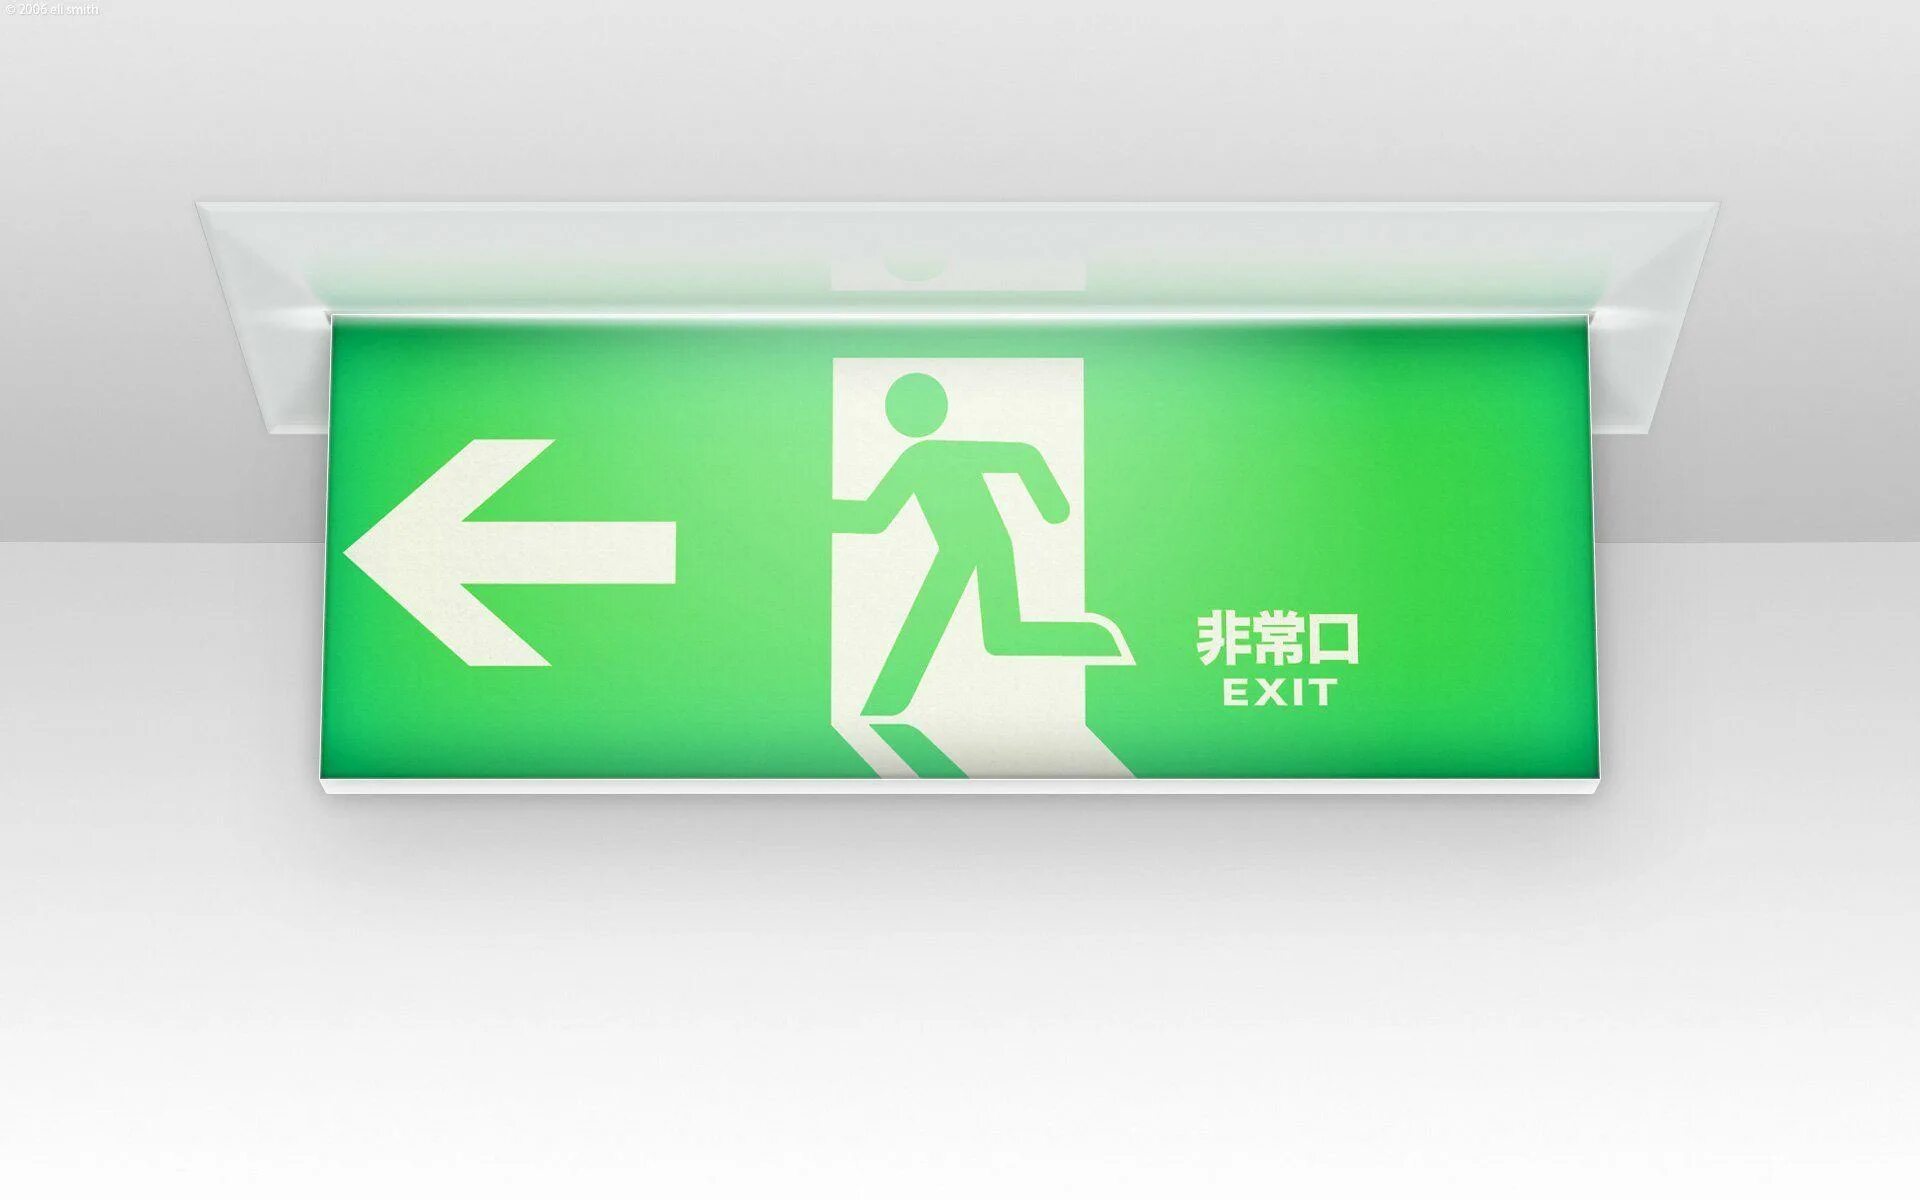 Exit 8 играть. Exit картинка. Зеленая табличка exit. Дизайнерские таблички exit. Exit на белом фоне.